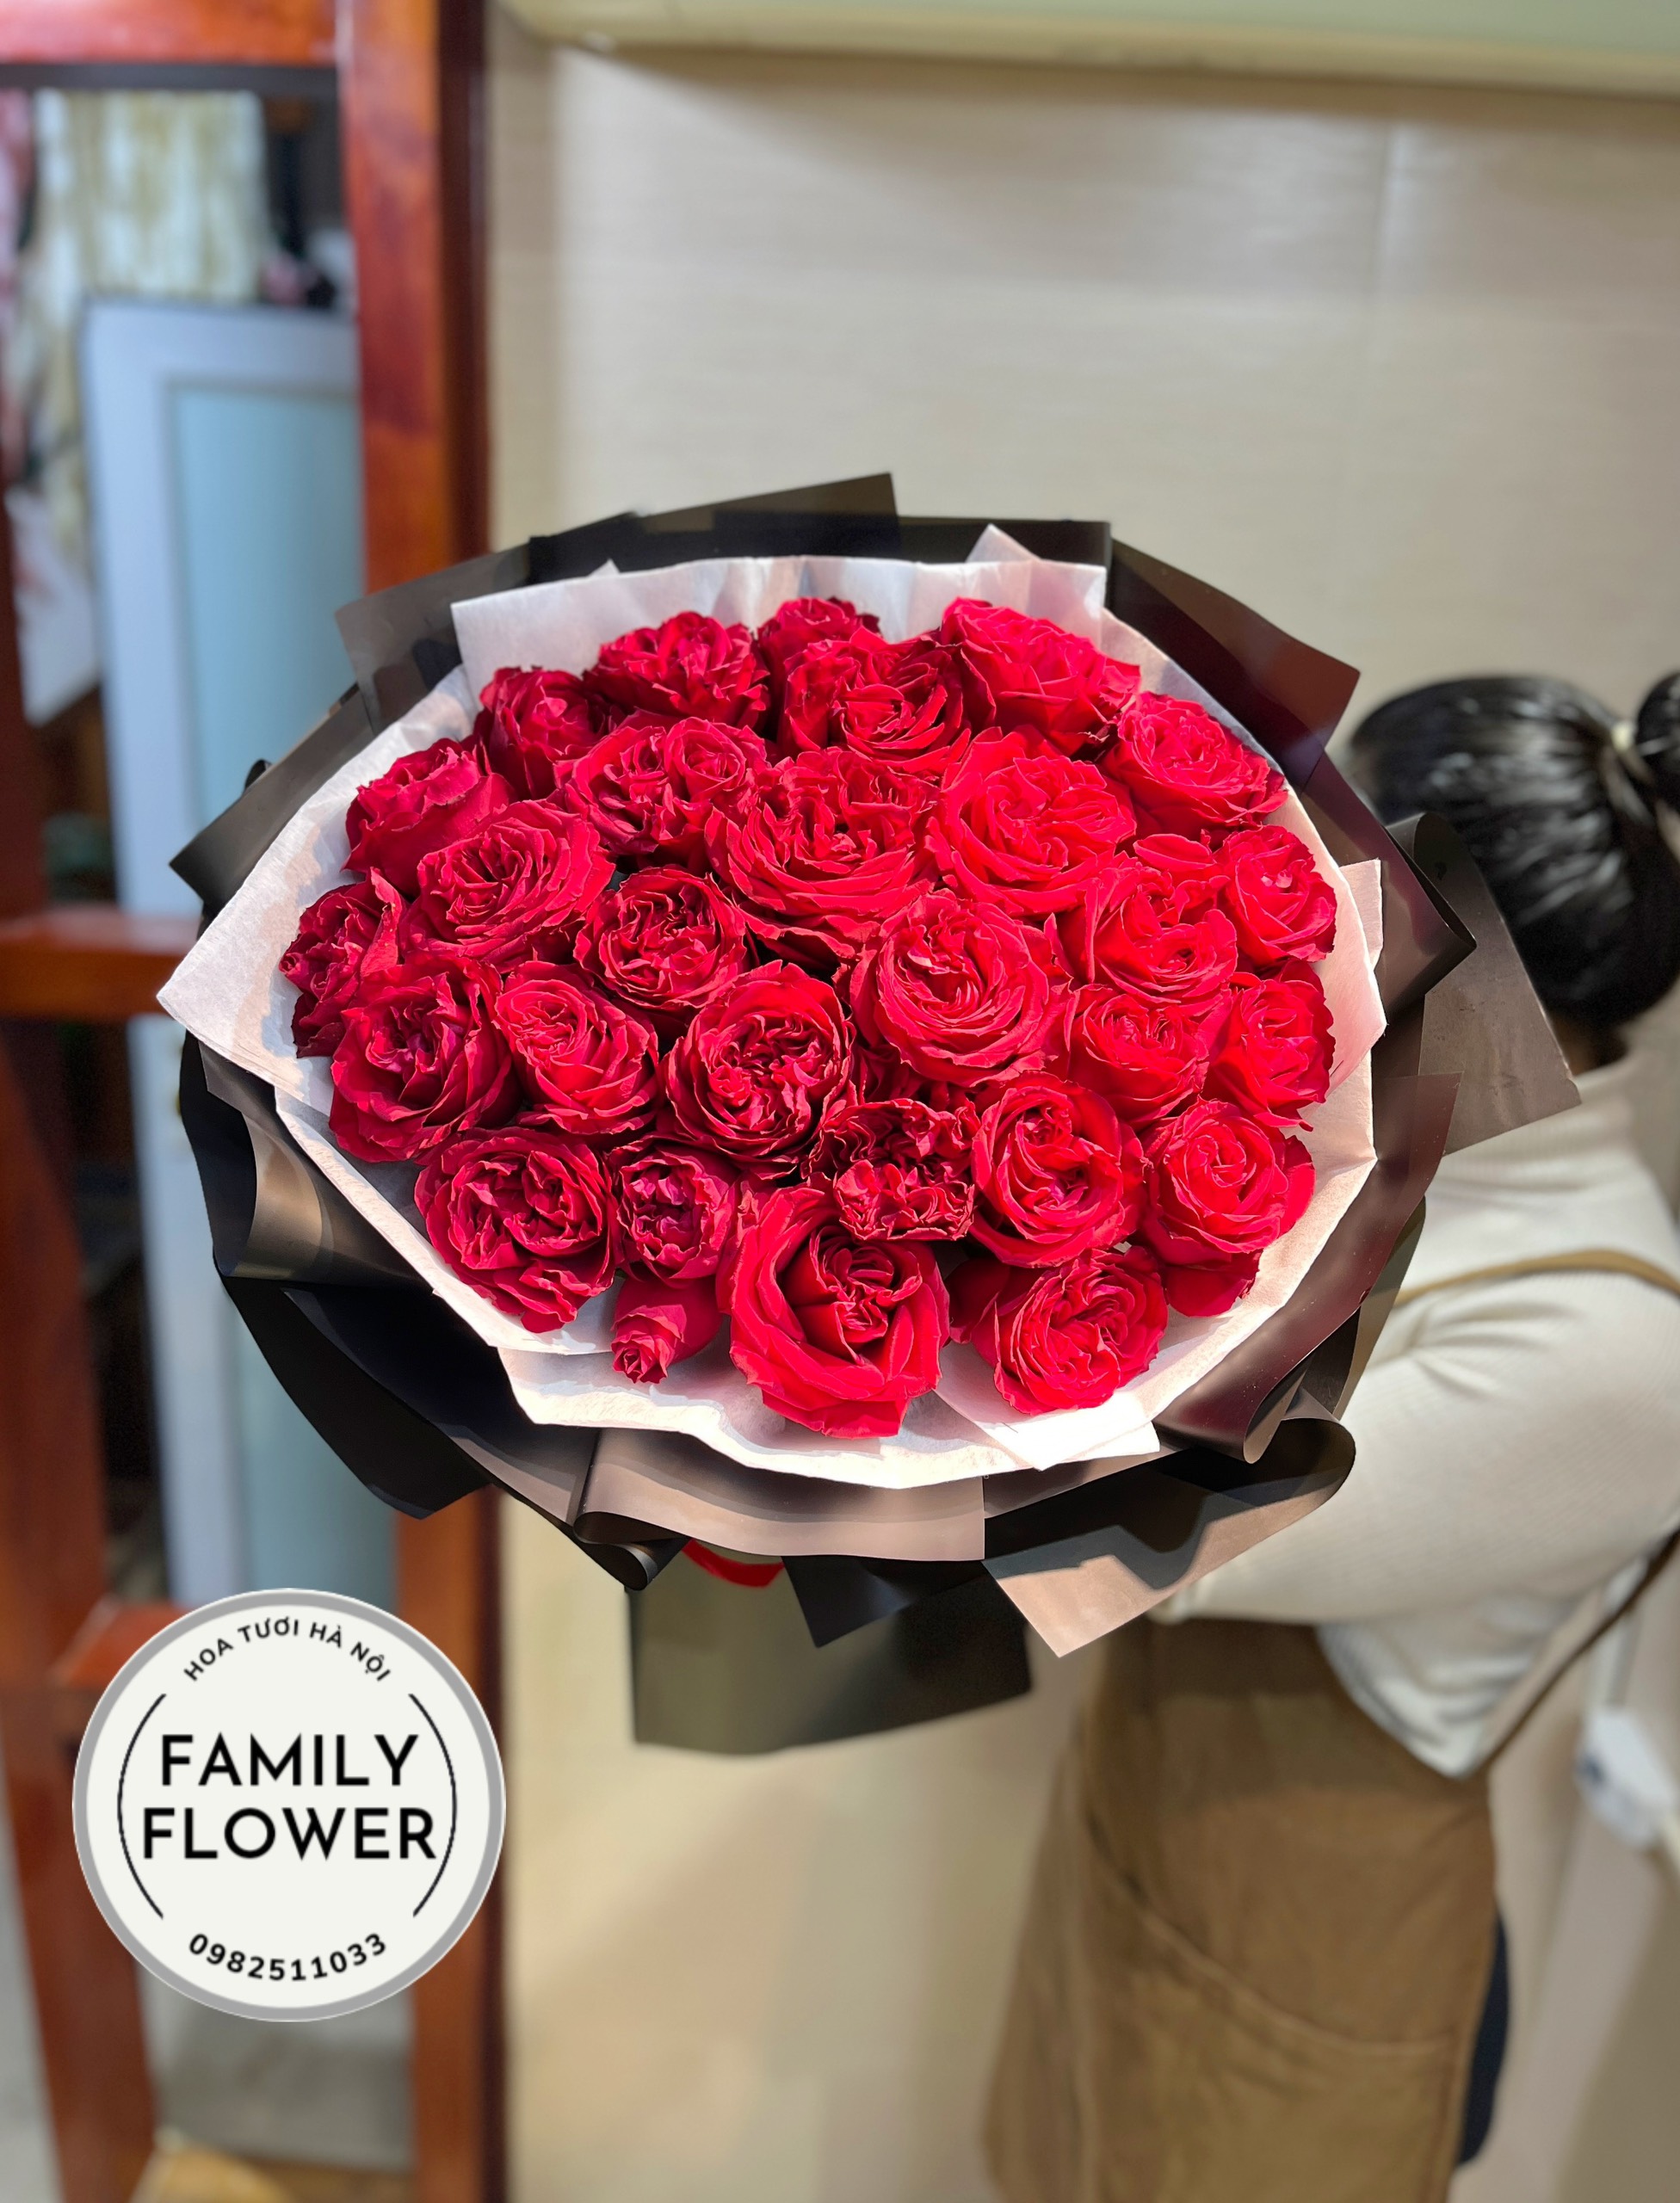 Hoa hồng đỏ Hà Nội ! Mua hoa hồng đỏ 8 tháng 3 ở Hà Nội ! Hoa tươi online Hà Nội